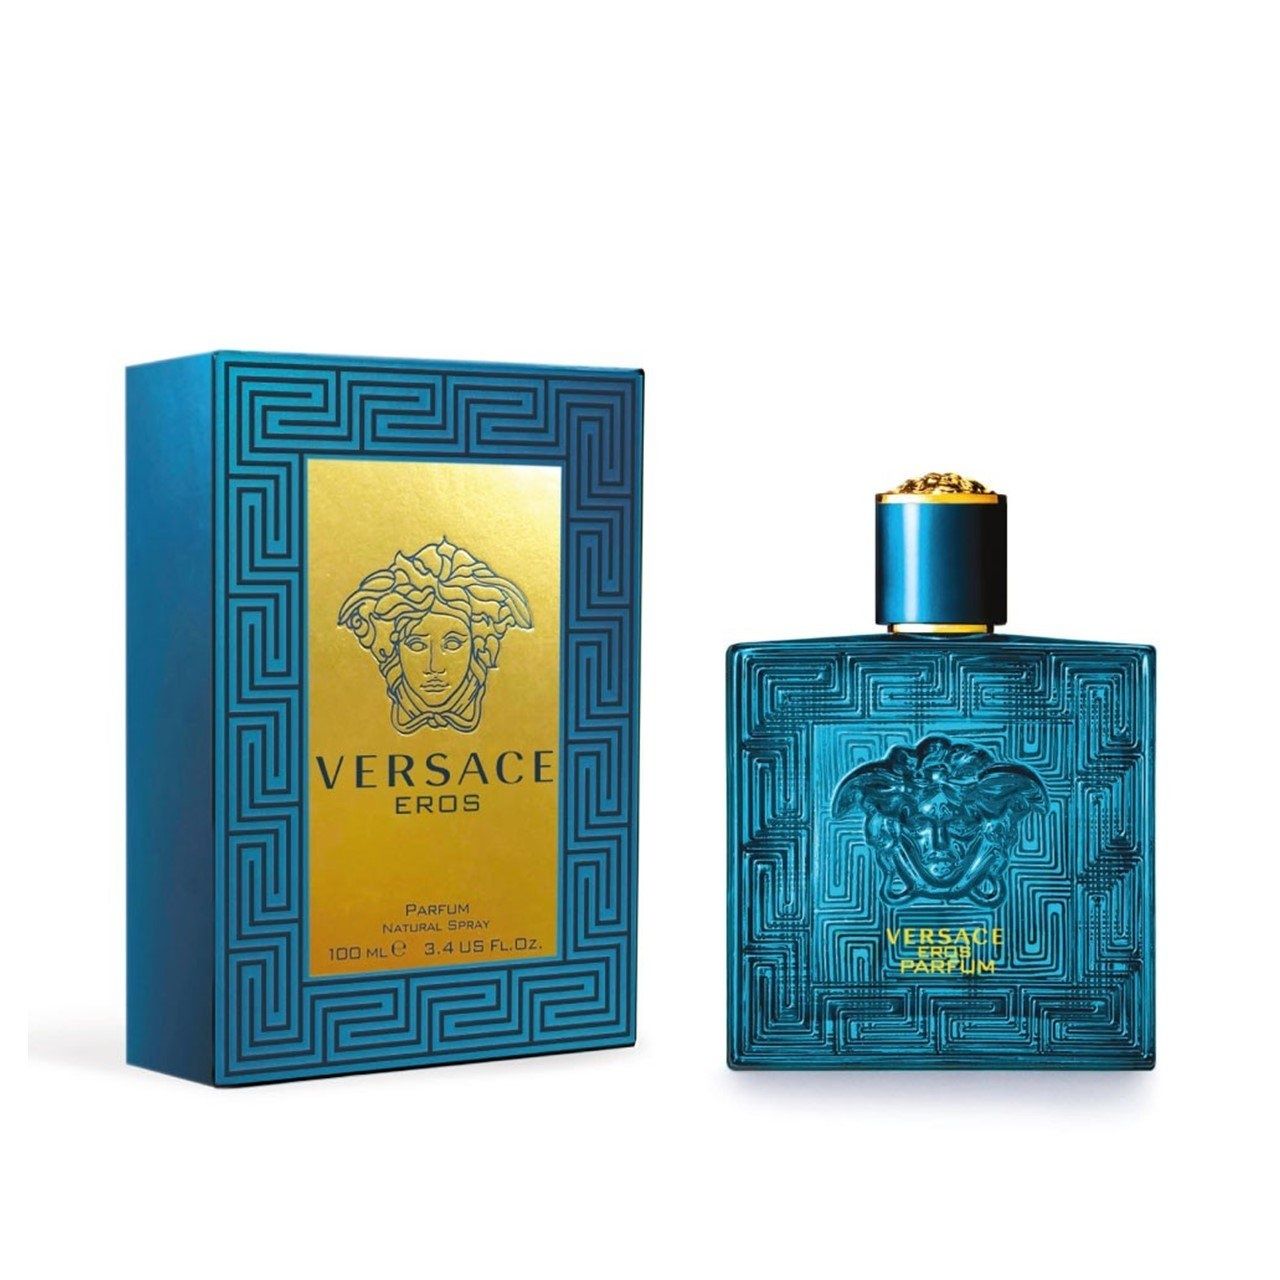 Оригинал Versace eros parfum 100ml - парфюм за мъже